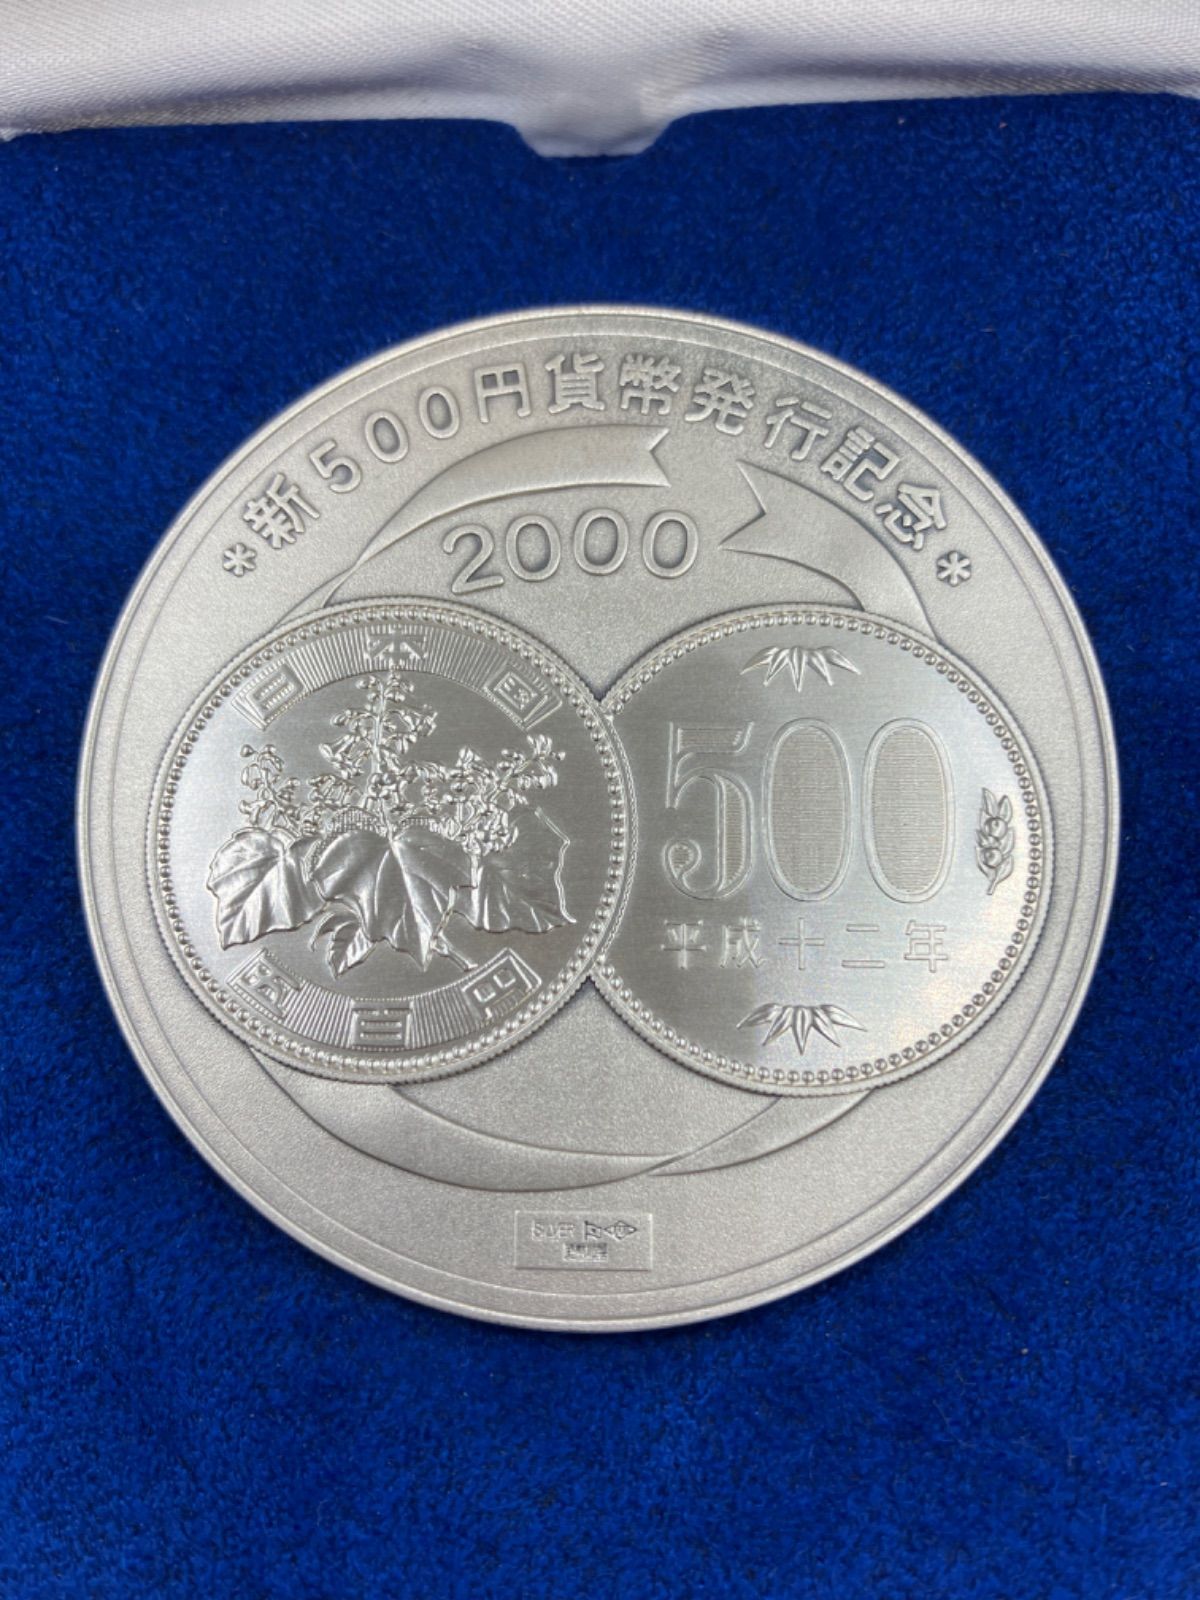 新500円貨幣発行記念 メダル - コレクション